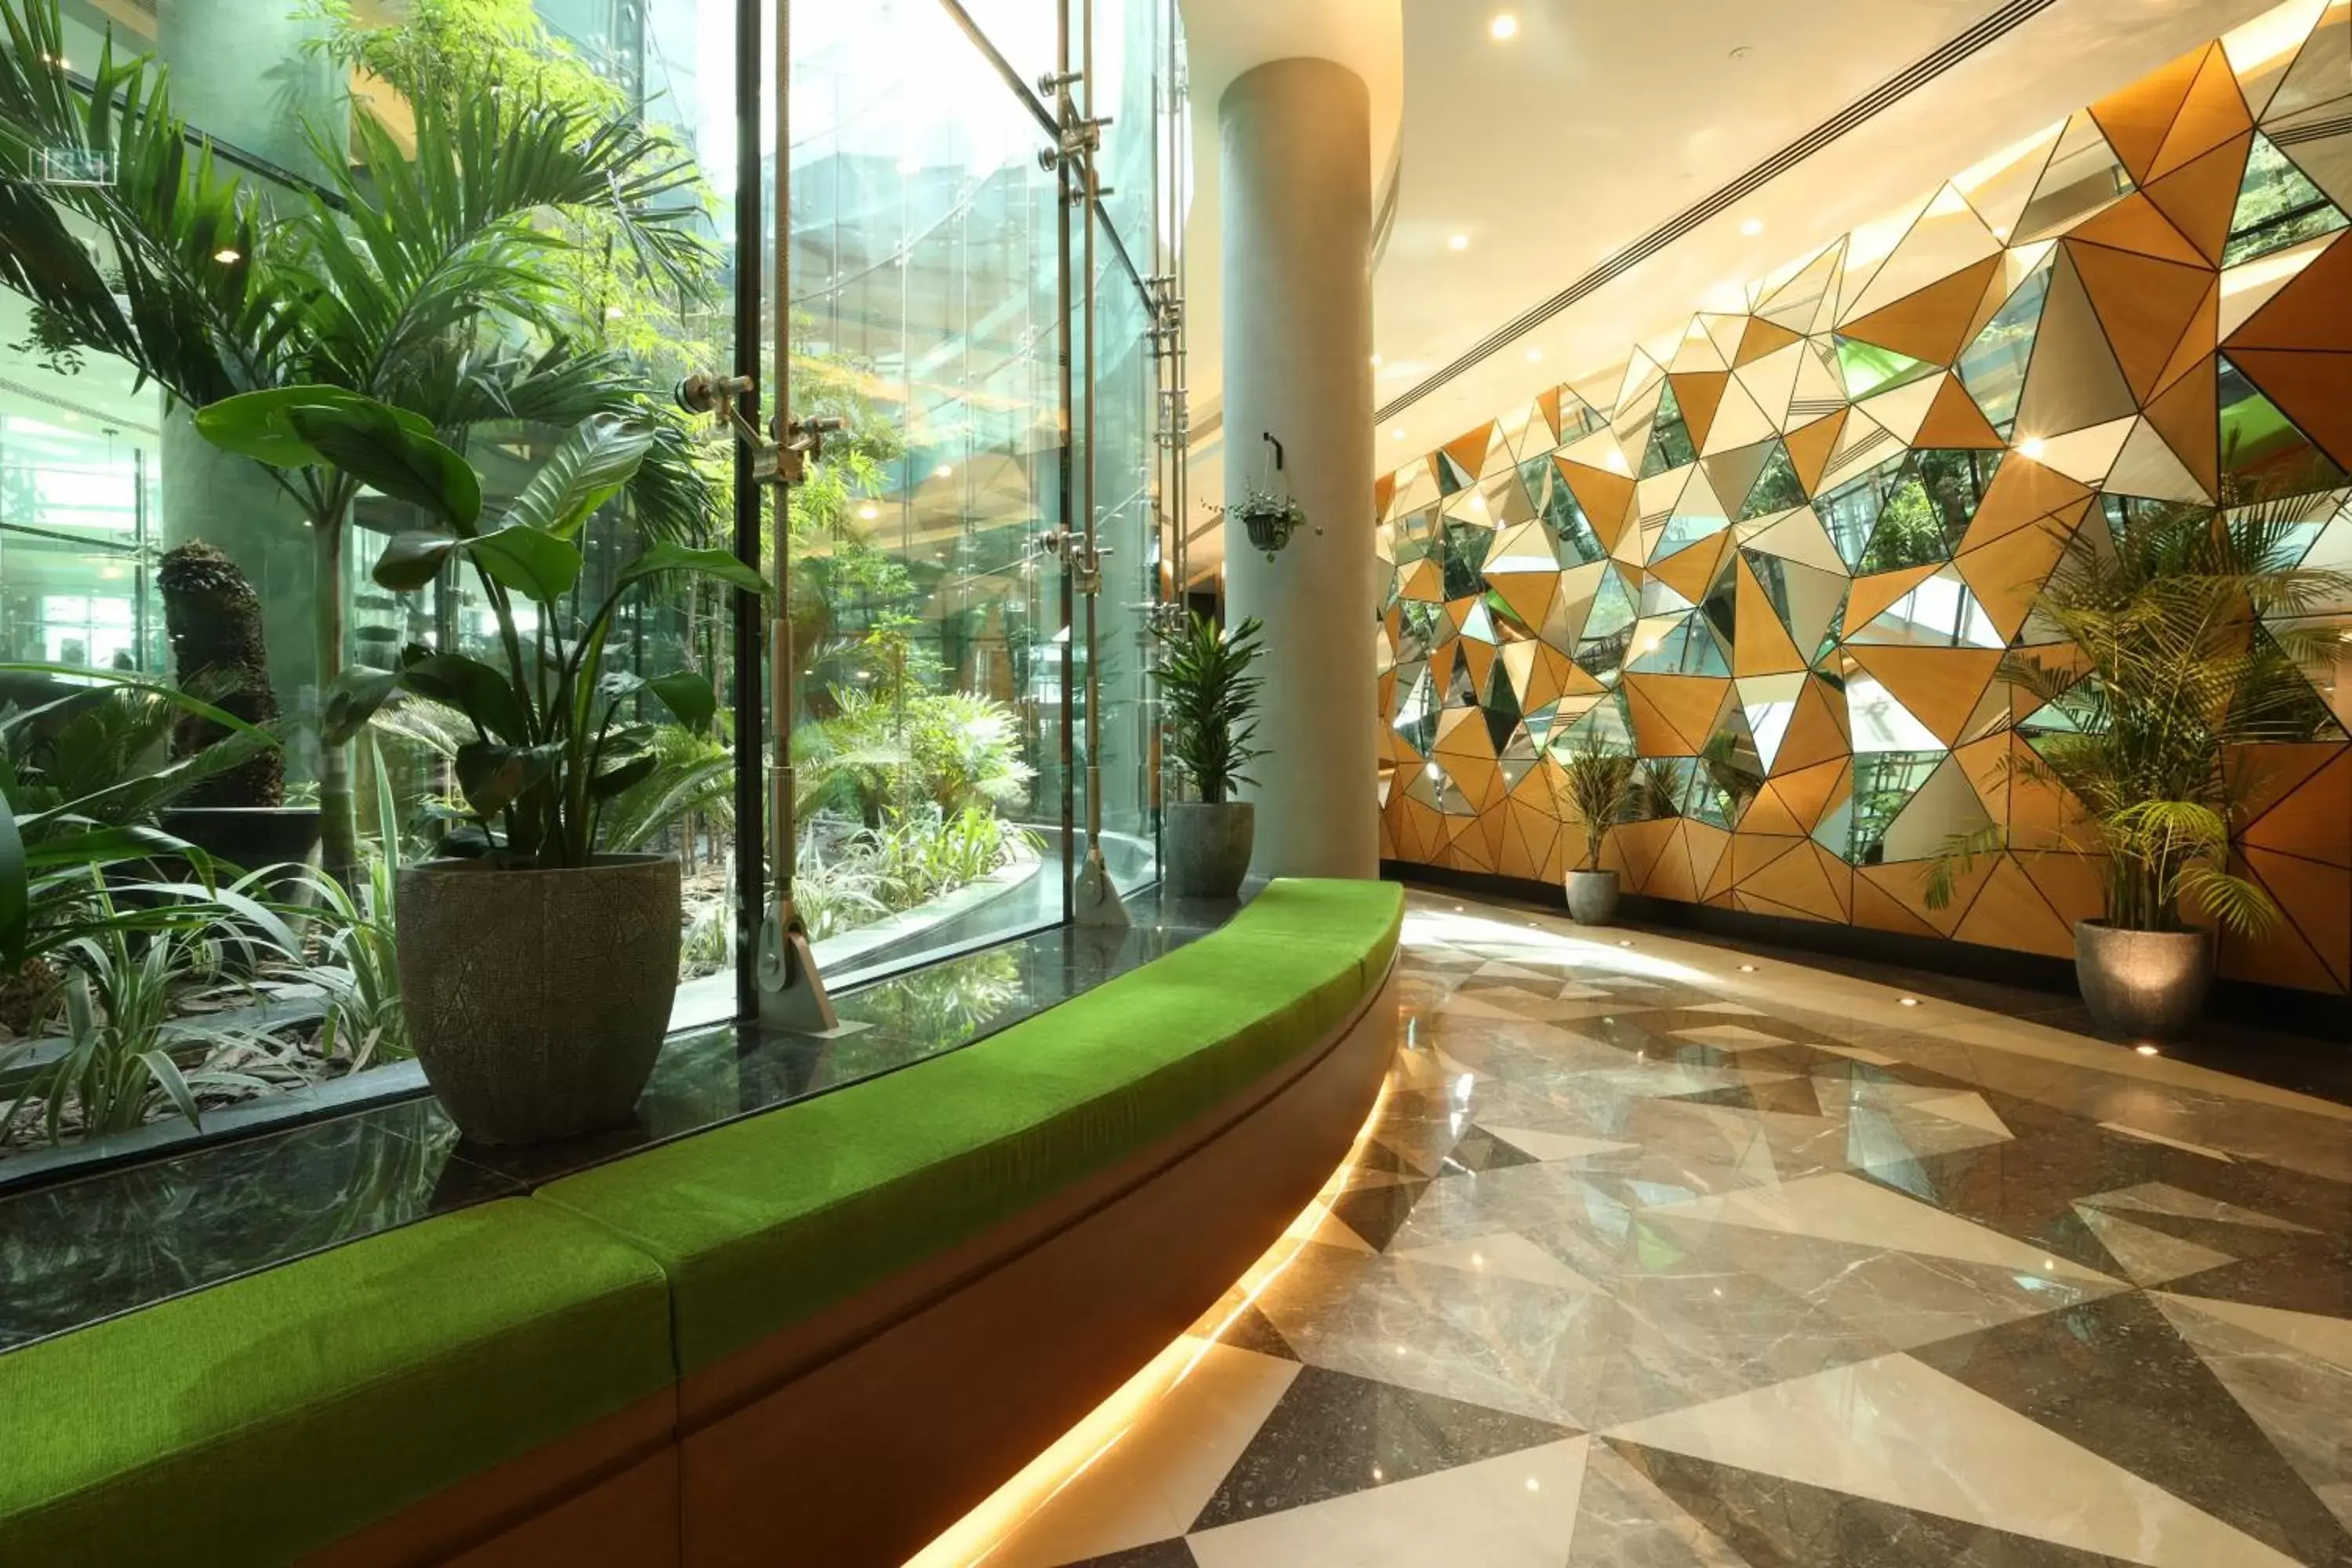 Lobby or reception in Al Khoory Sky Garden Hotel